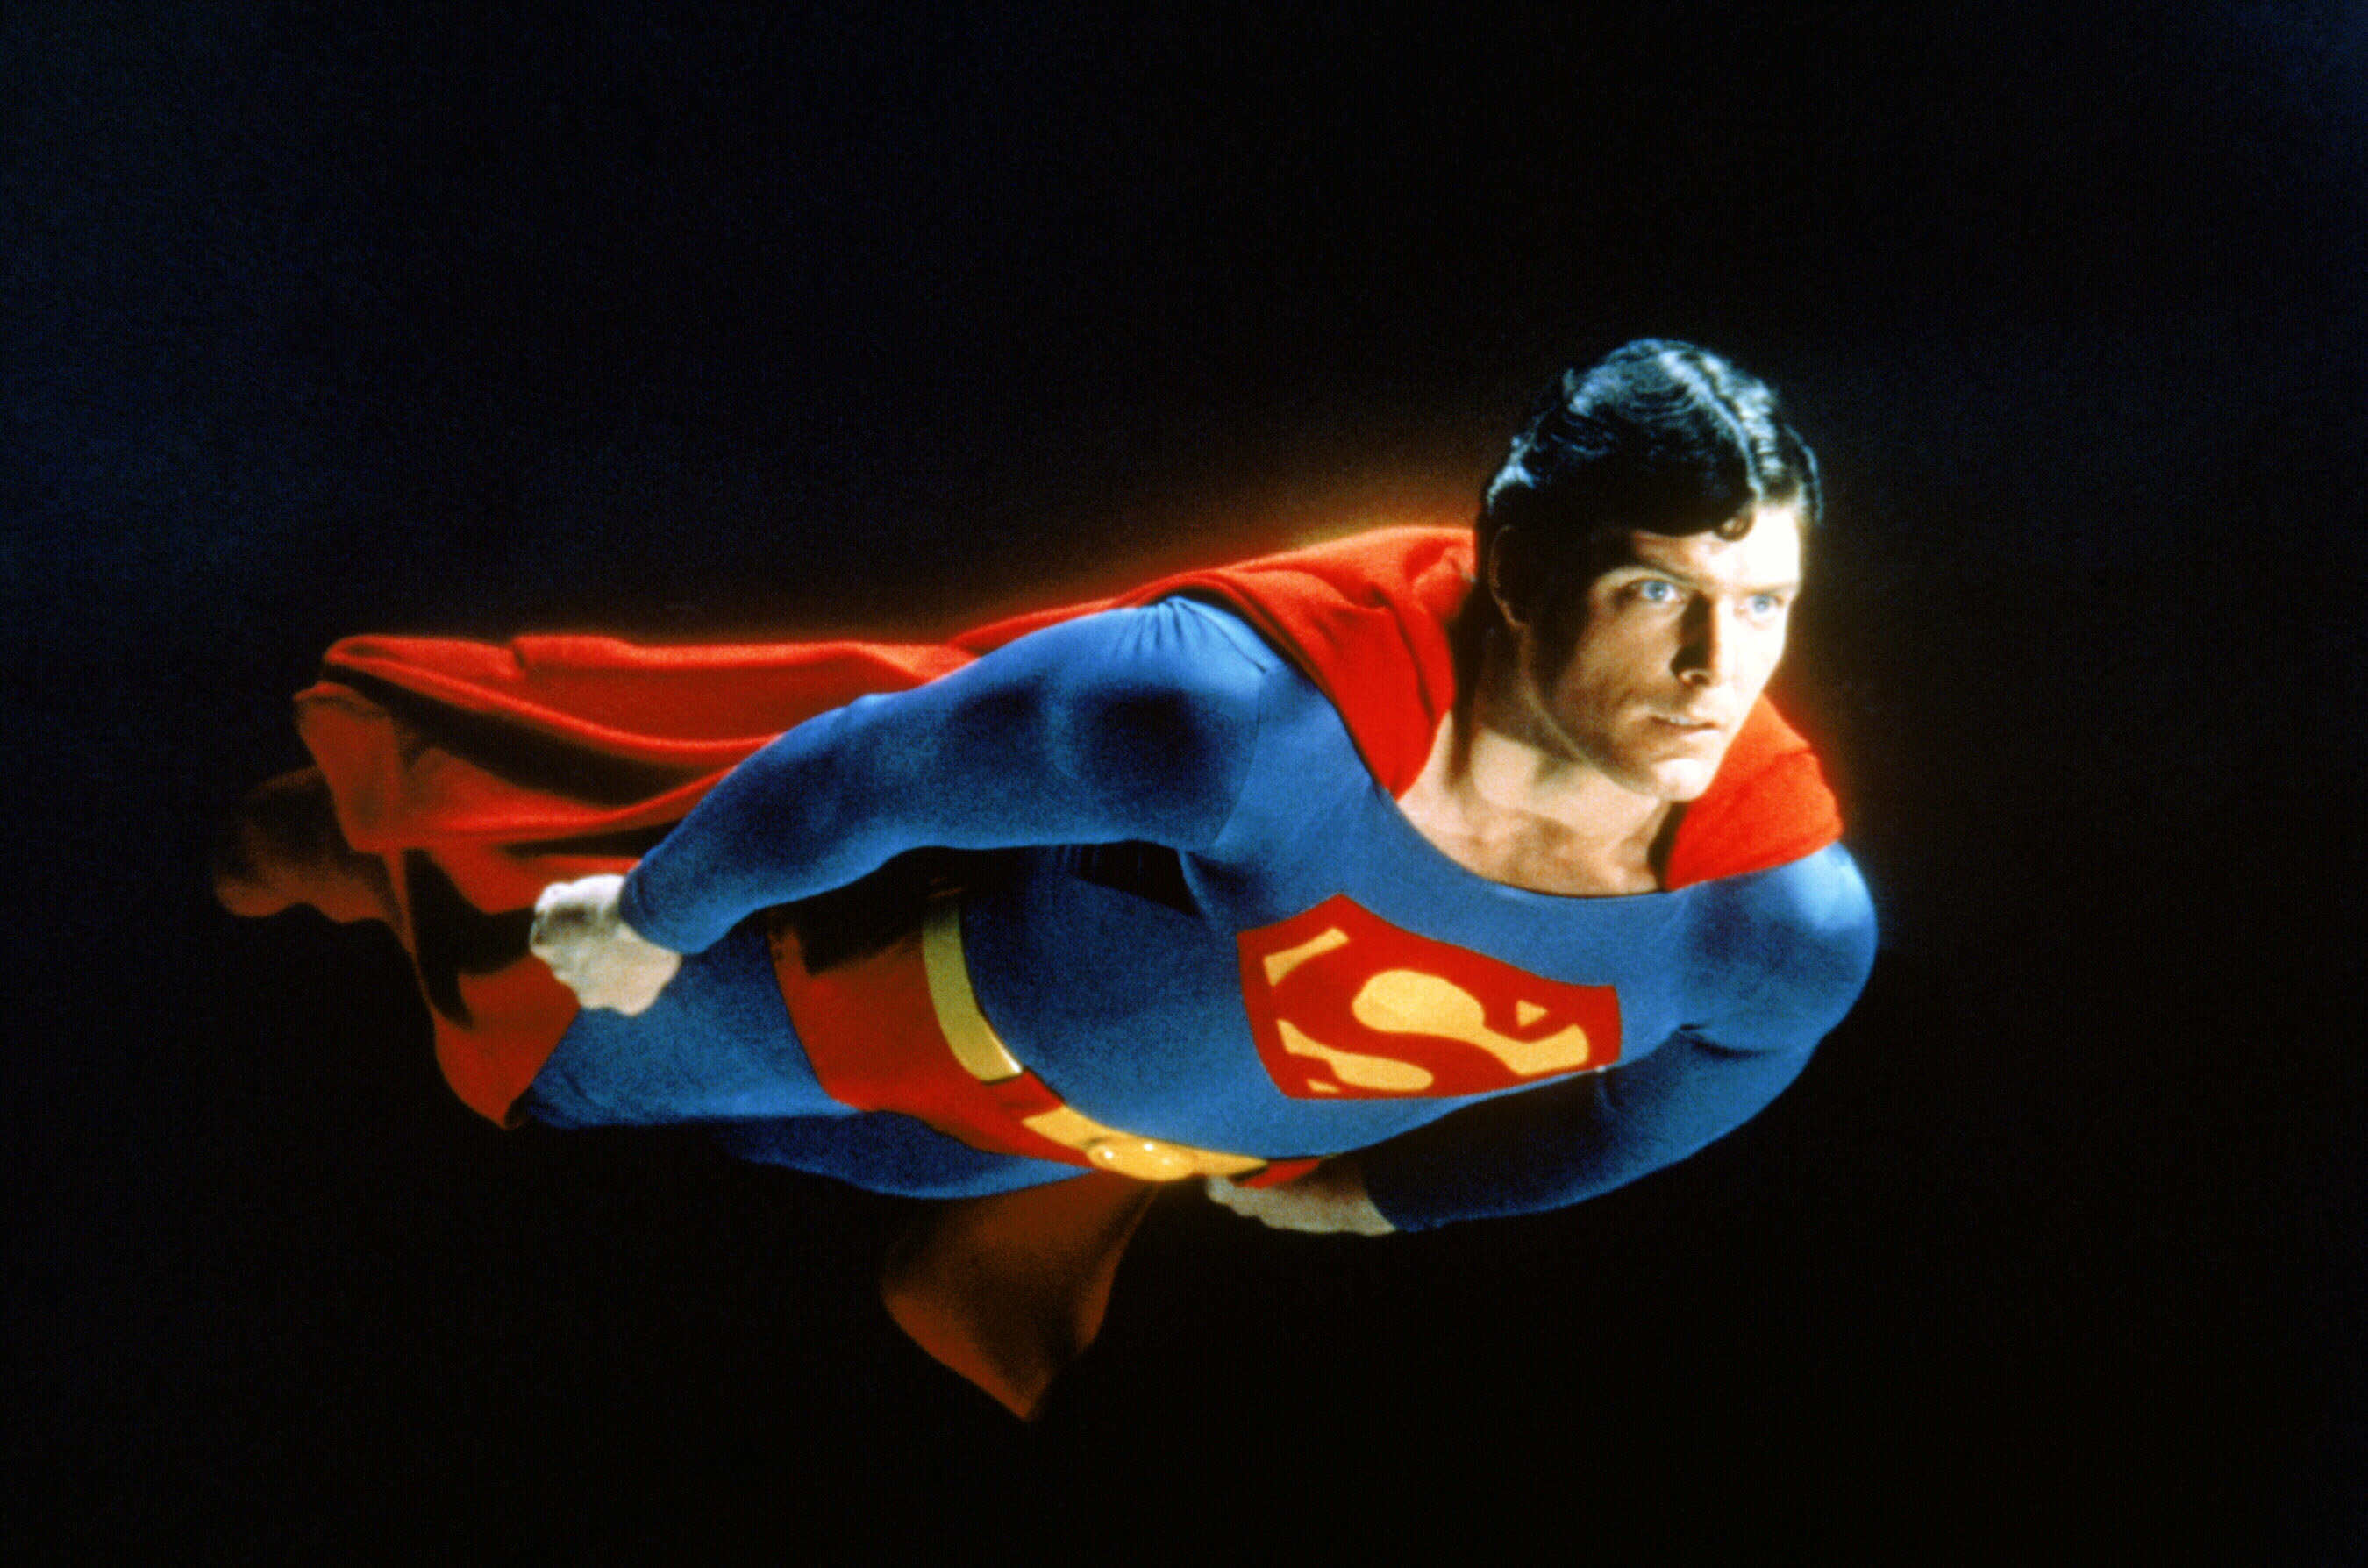 Reeves as Superman